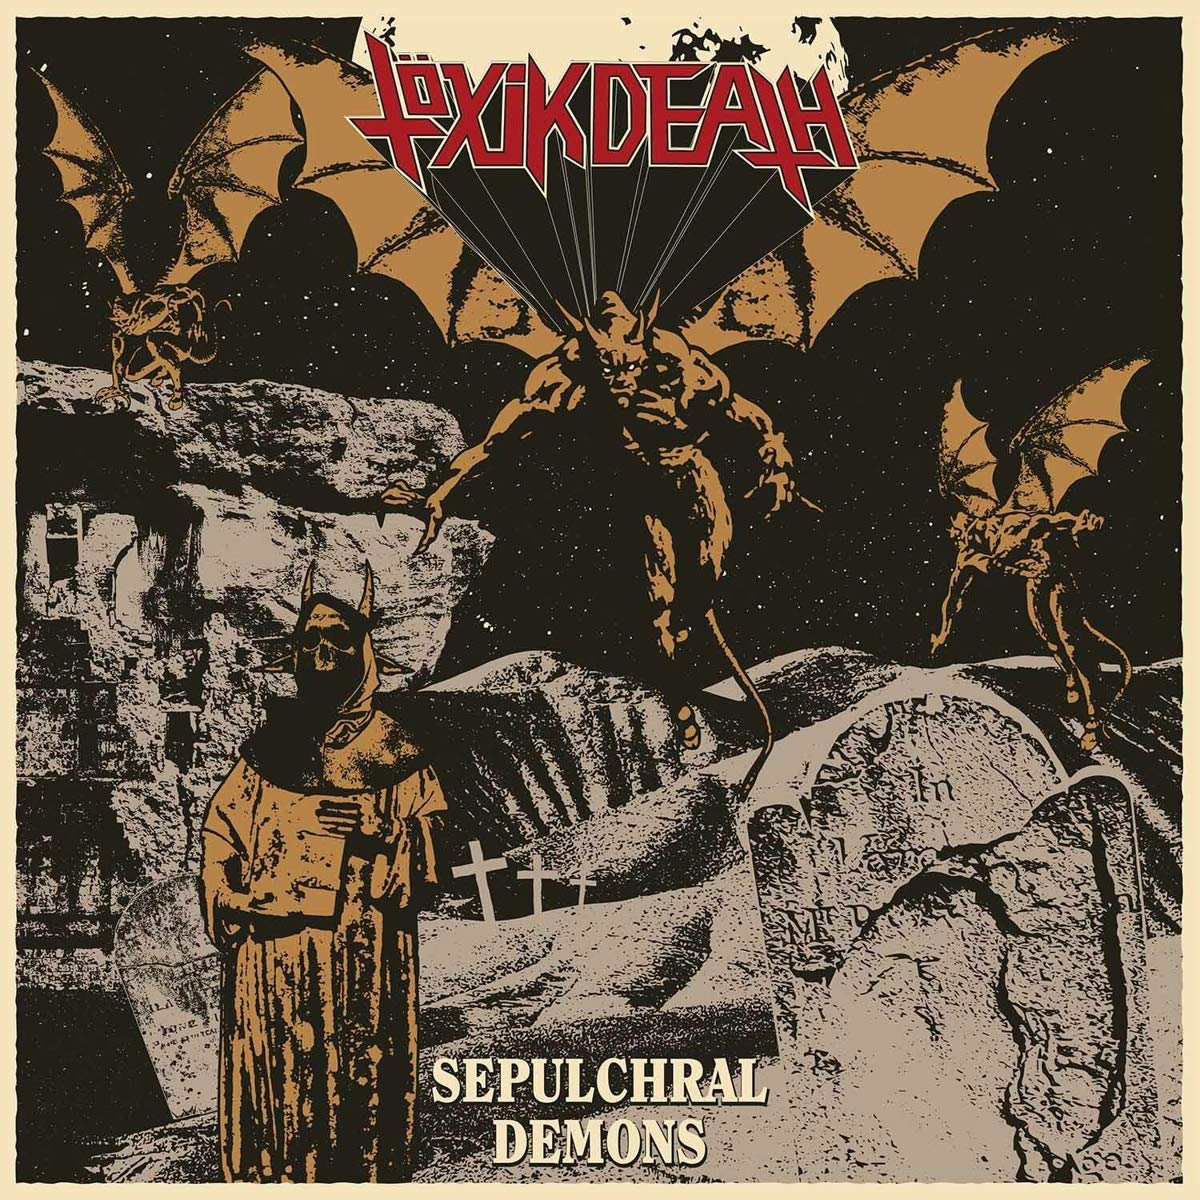 Vinile Toxik Death - Sepulchral Demons (Red Vinyl) NUOVO SIGILLATO, EDIZIONE DEL 01/09/2020 SUBITO DISPONIBILE